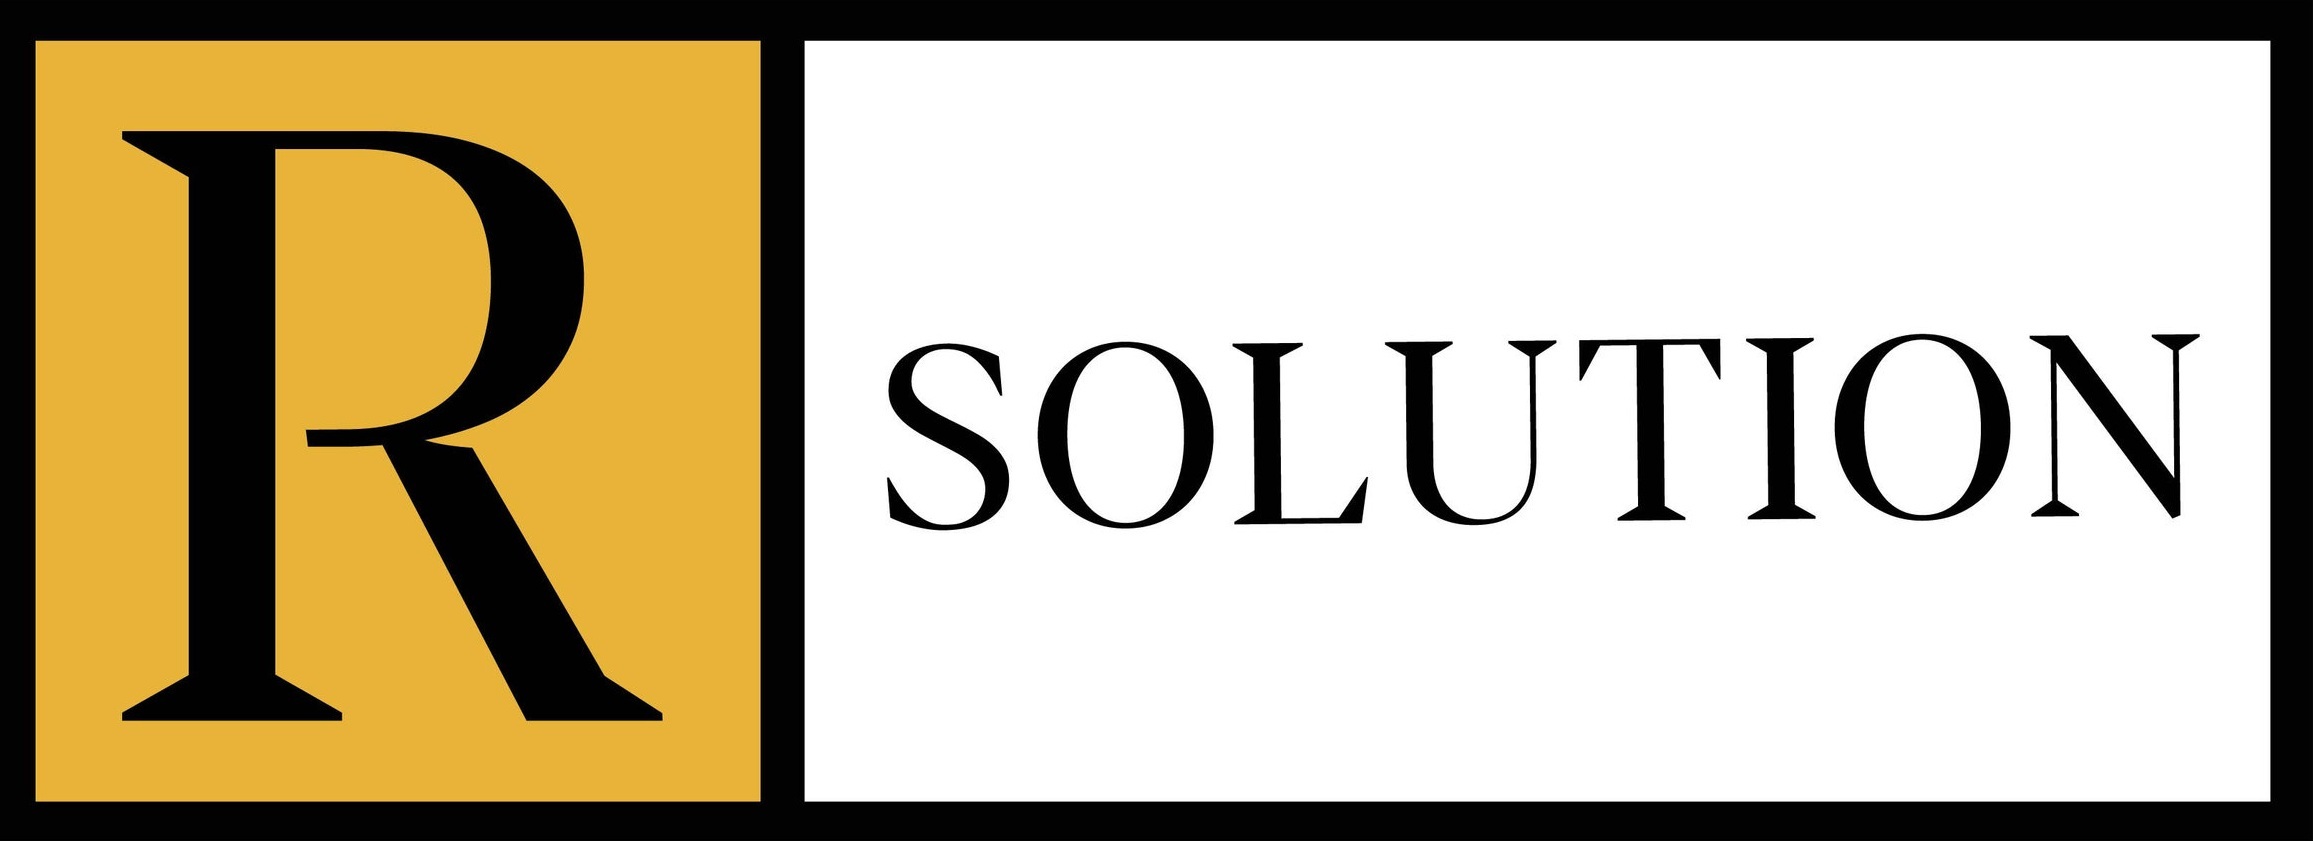 RSolution Logo.jpg